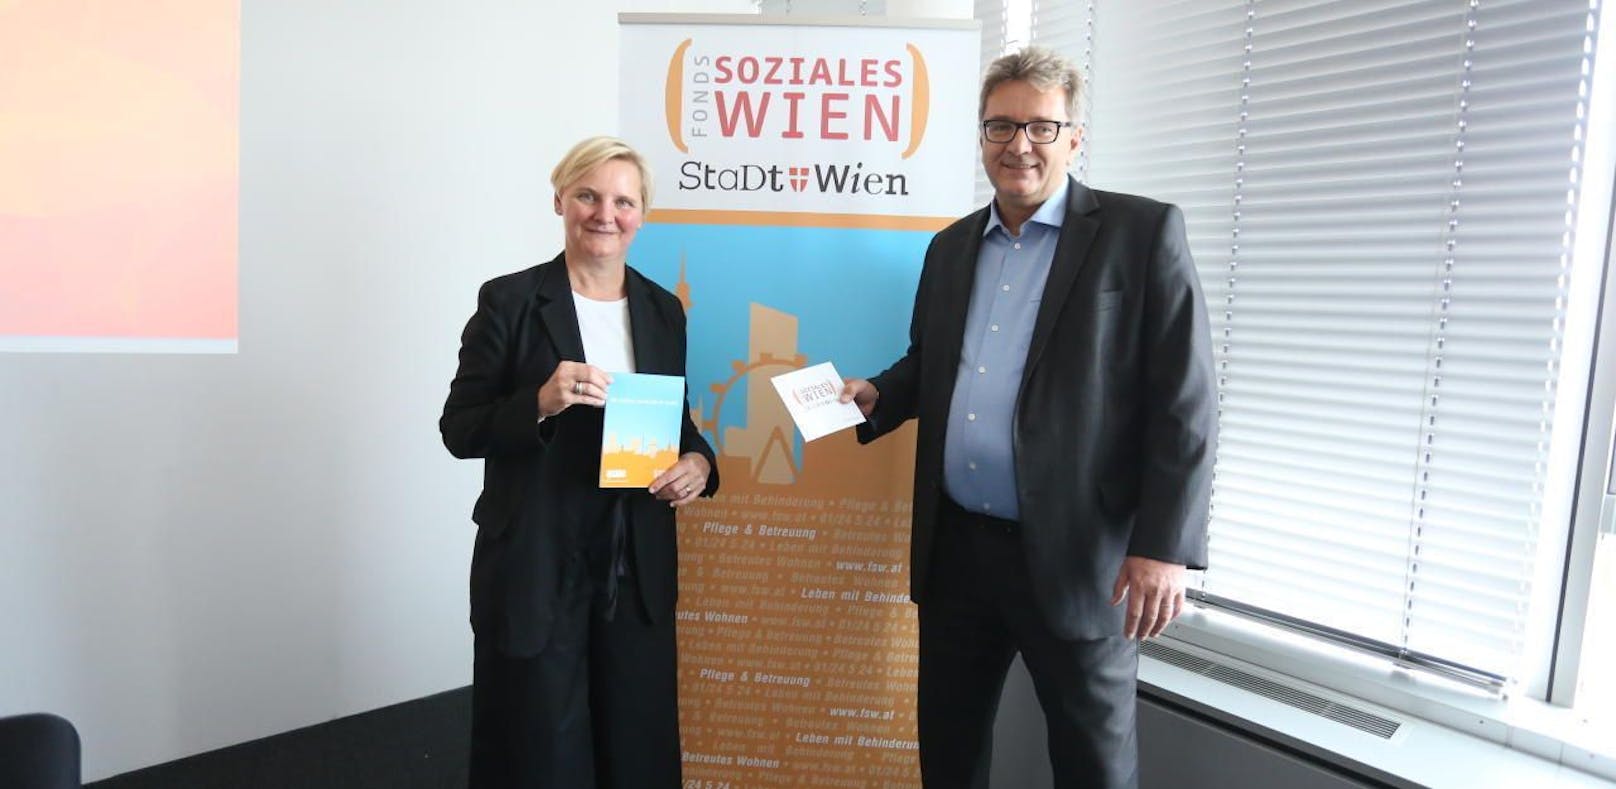 Sozialstadträtin Sandra Frauenberger (SPÖ) und FSW-Chef Peter Hacker stellten den Geschäftsbericht für das Jahr 2016 vor.